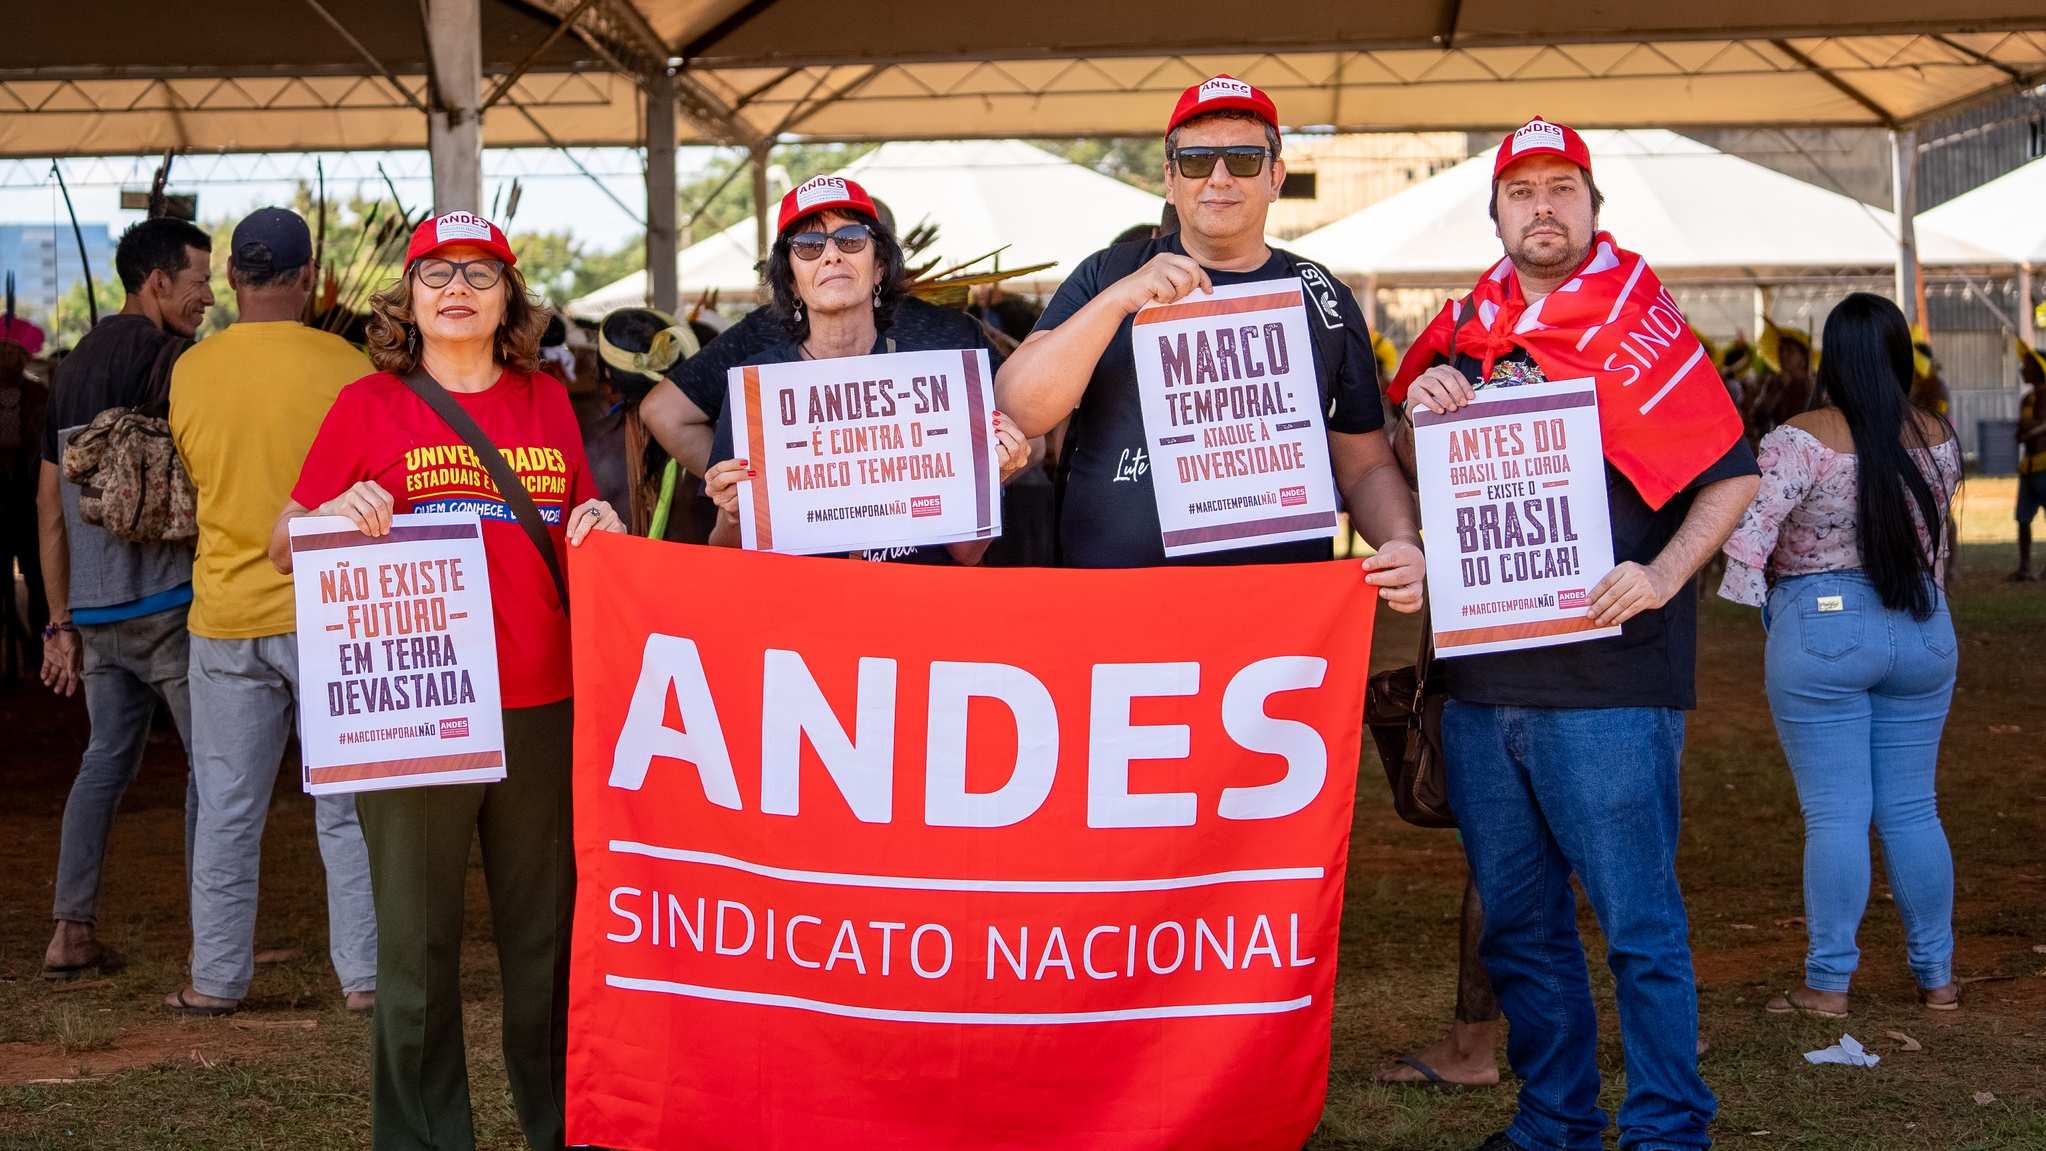 ANDES-SN se soma a mobilizações contra o Marco Temporal